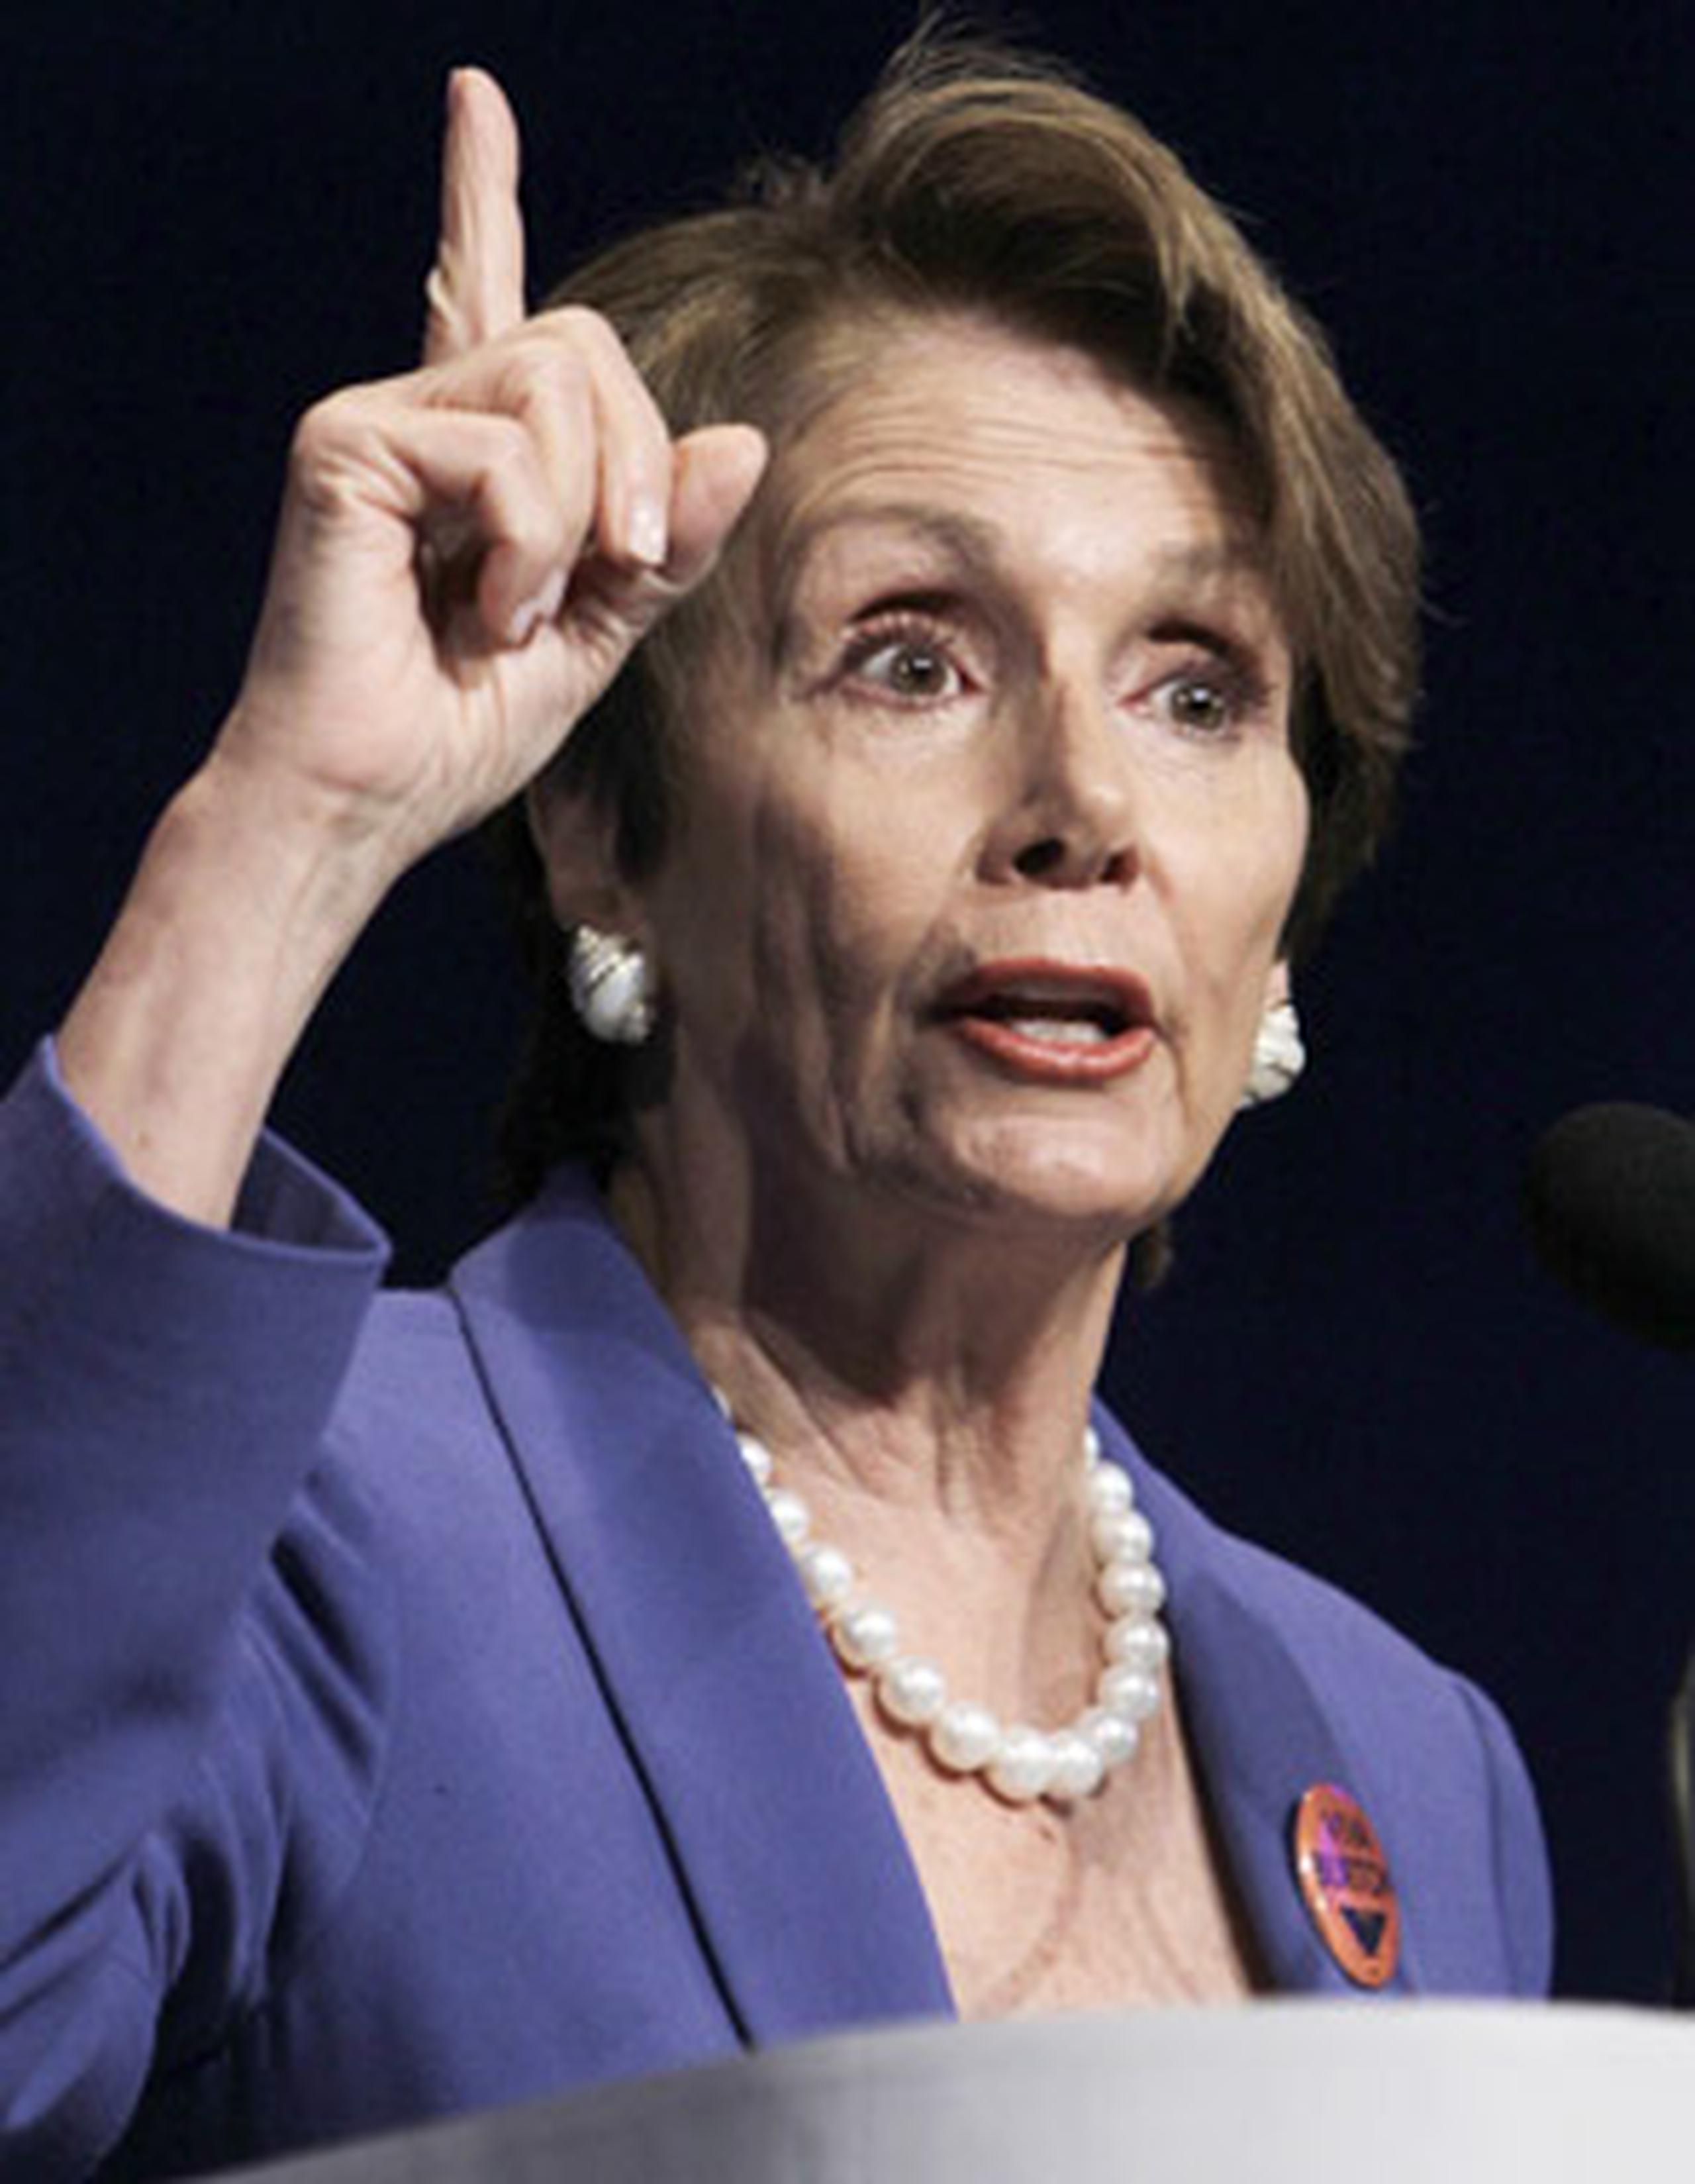 La líder demócrata Nancy Pelosi, dijo que "vamos a garantizar que se haga justicia". (Archivo/AP)